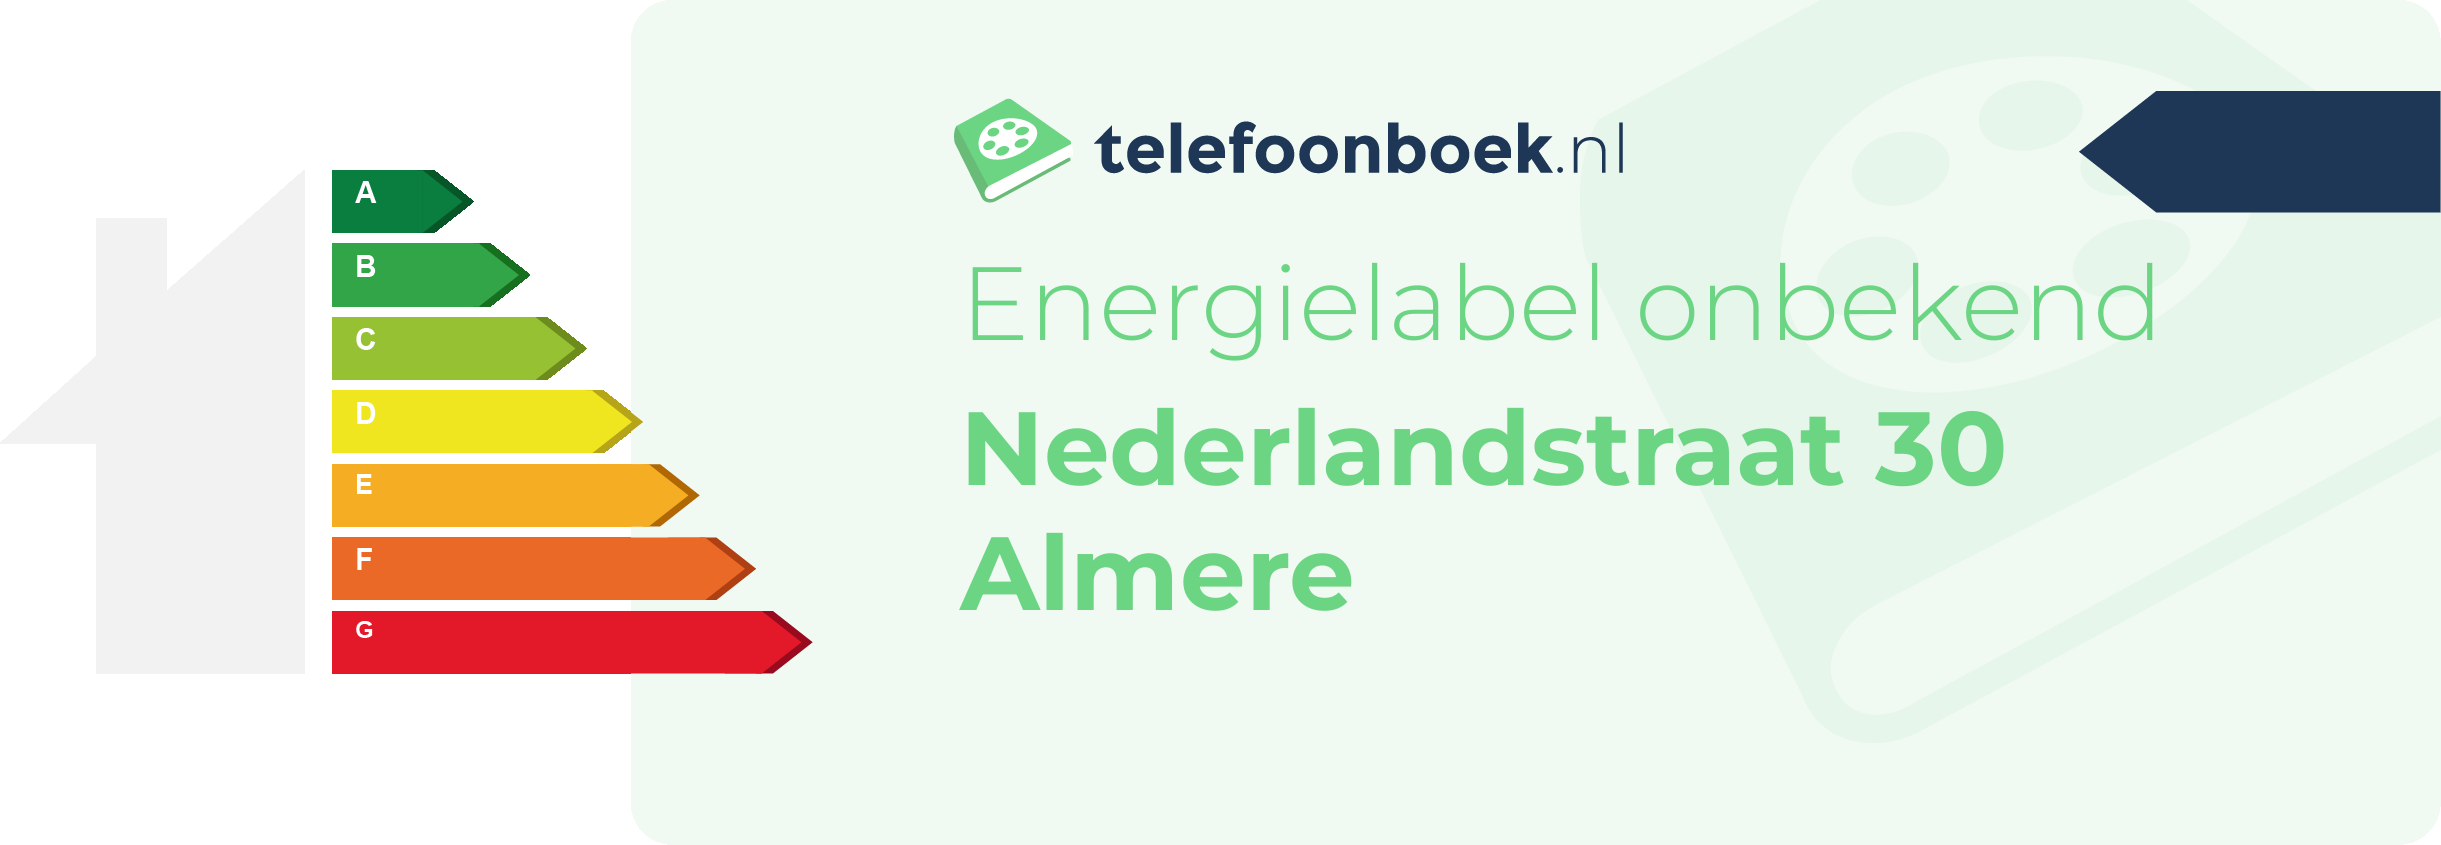 Energielabel Nederlandstraat 30 Almere